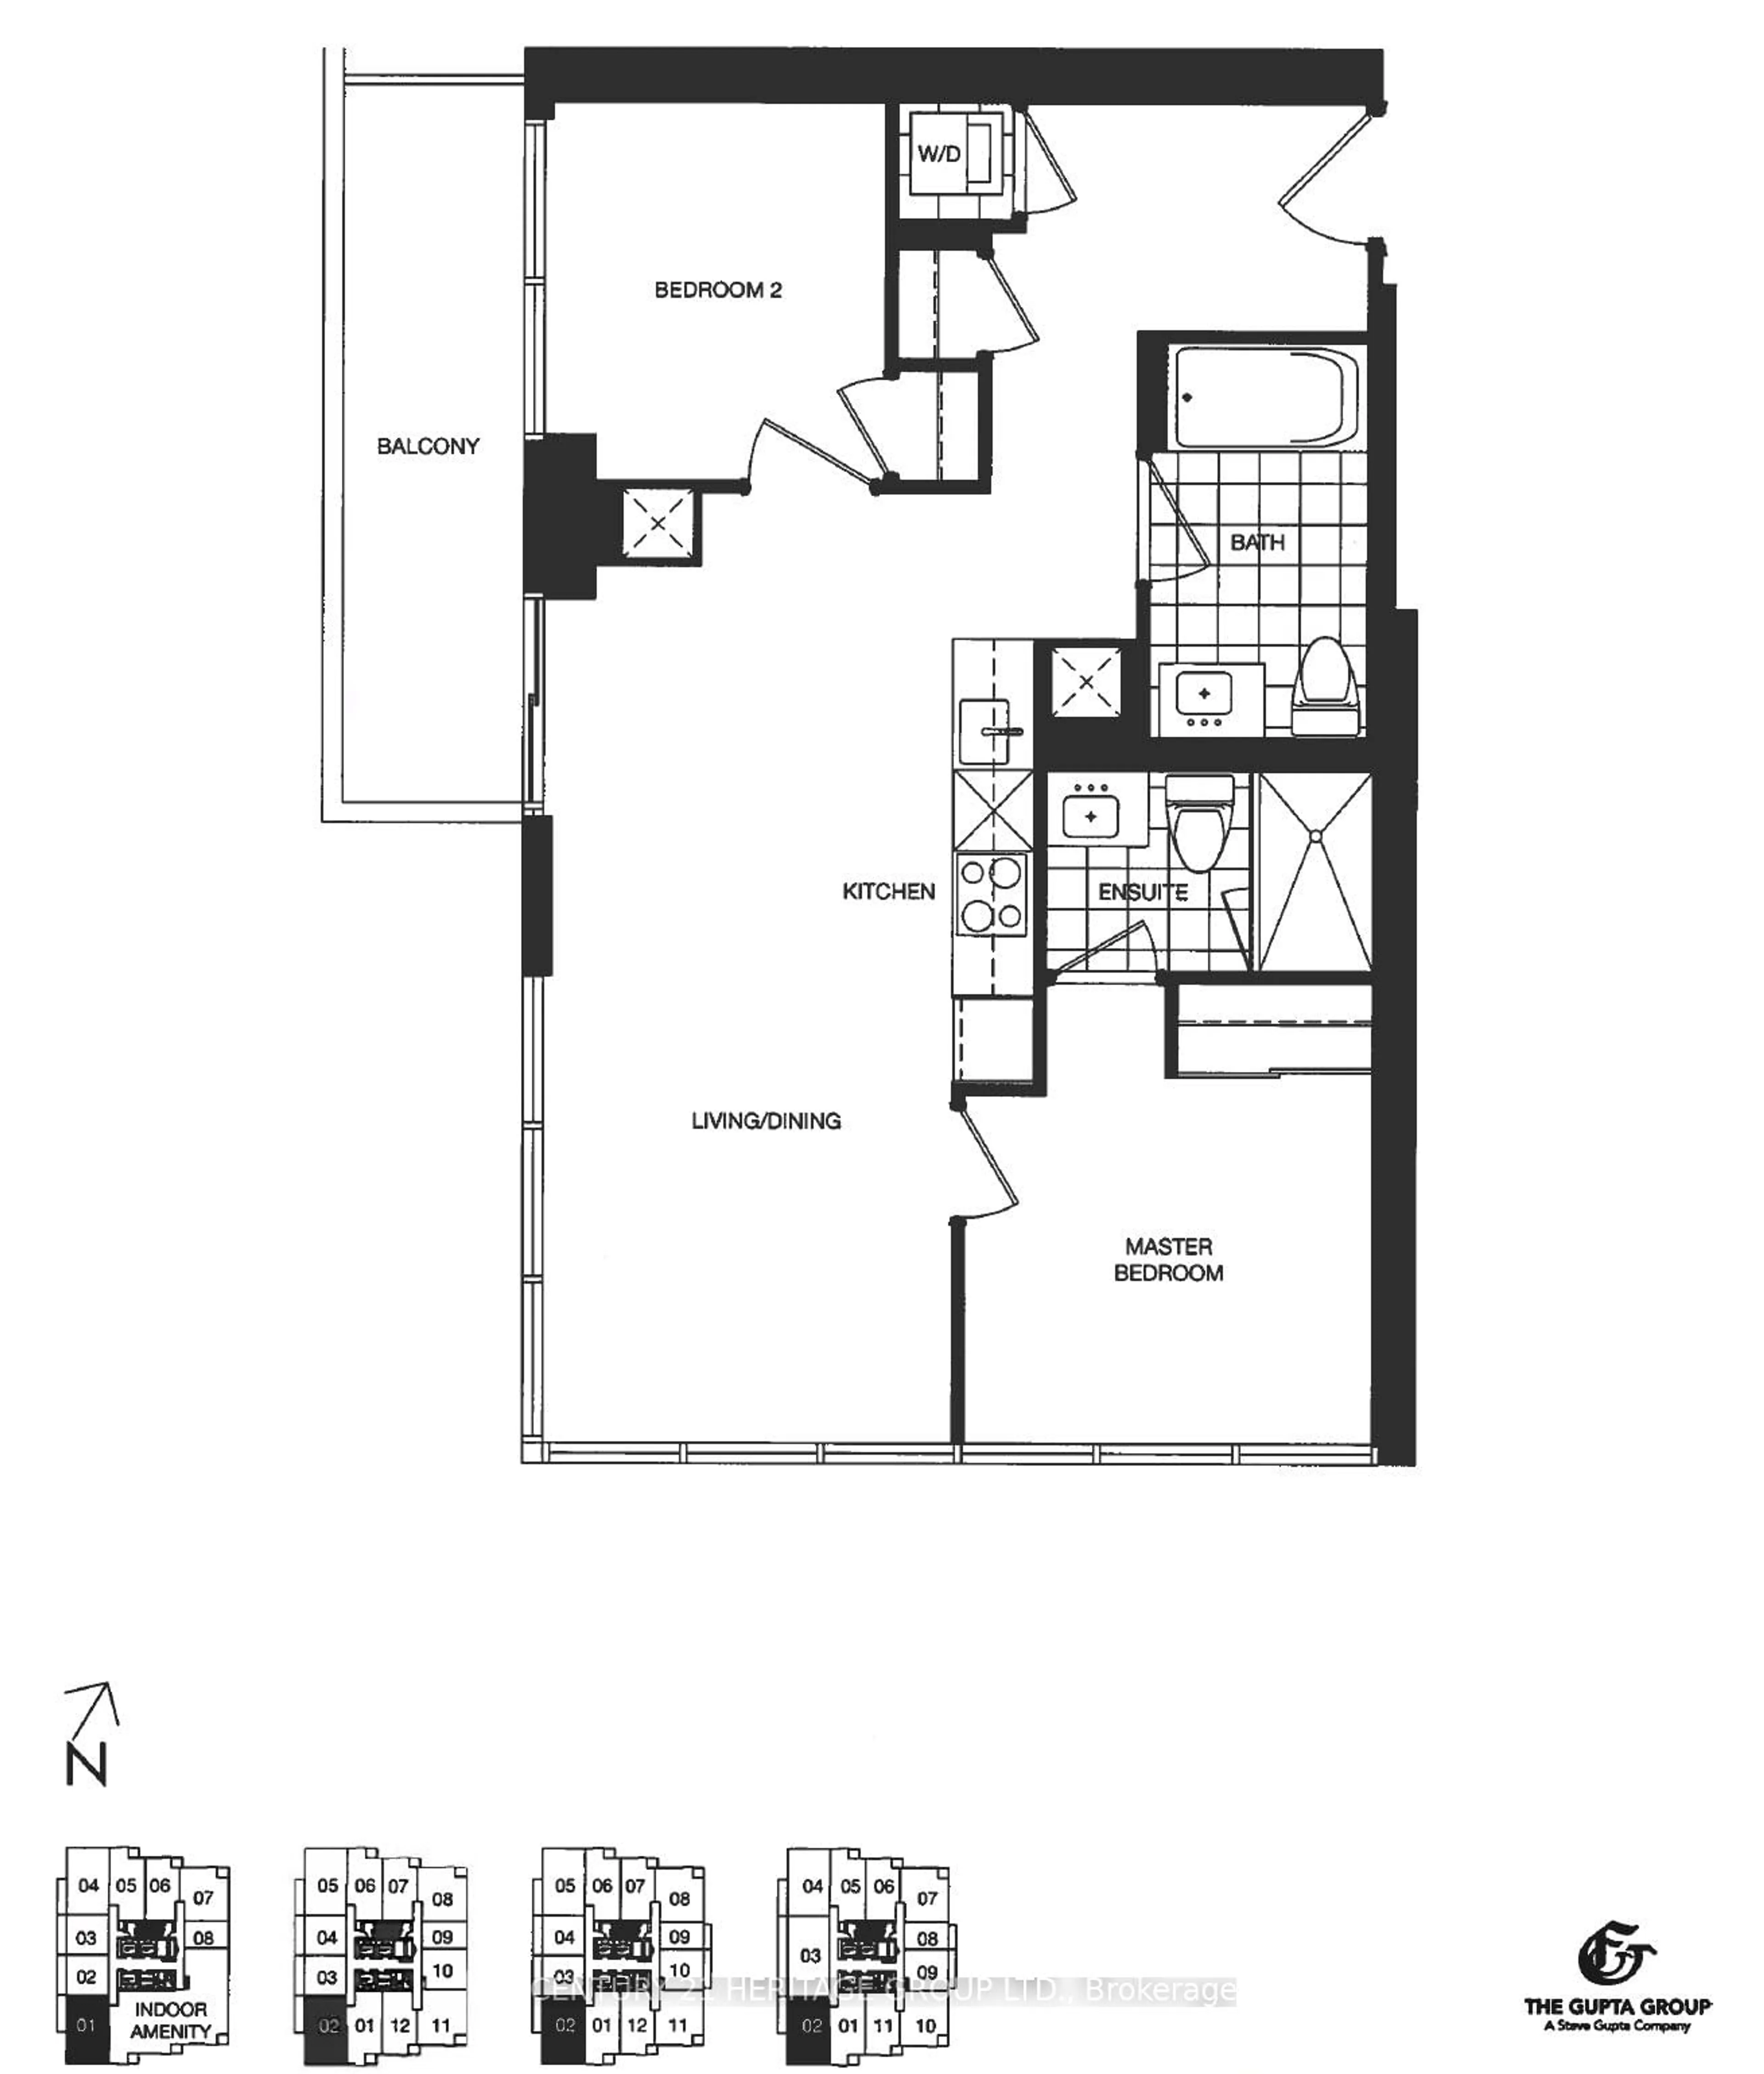 Floor plan for 395 Bloor St #2102, Toronto Ontario M4W 0B4